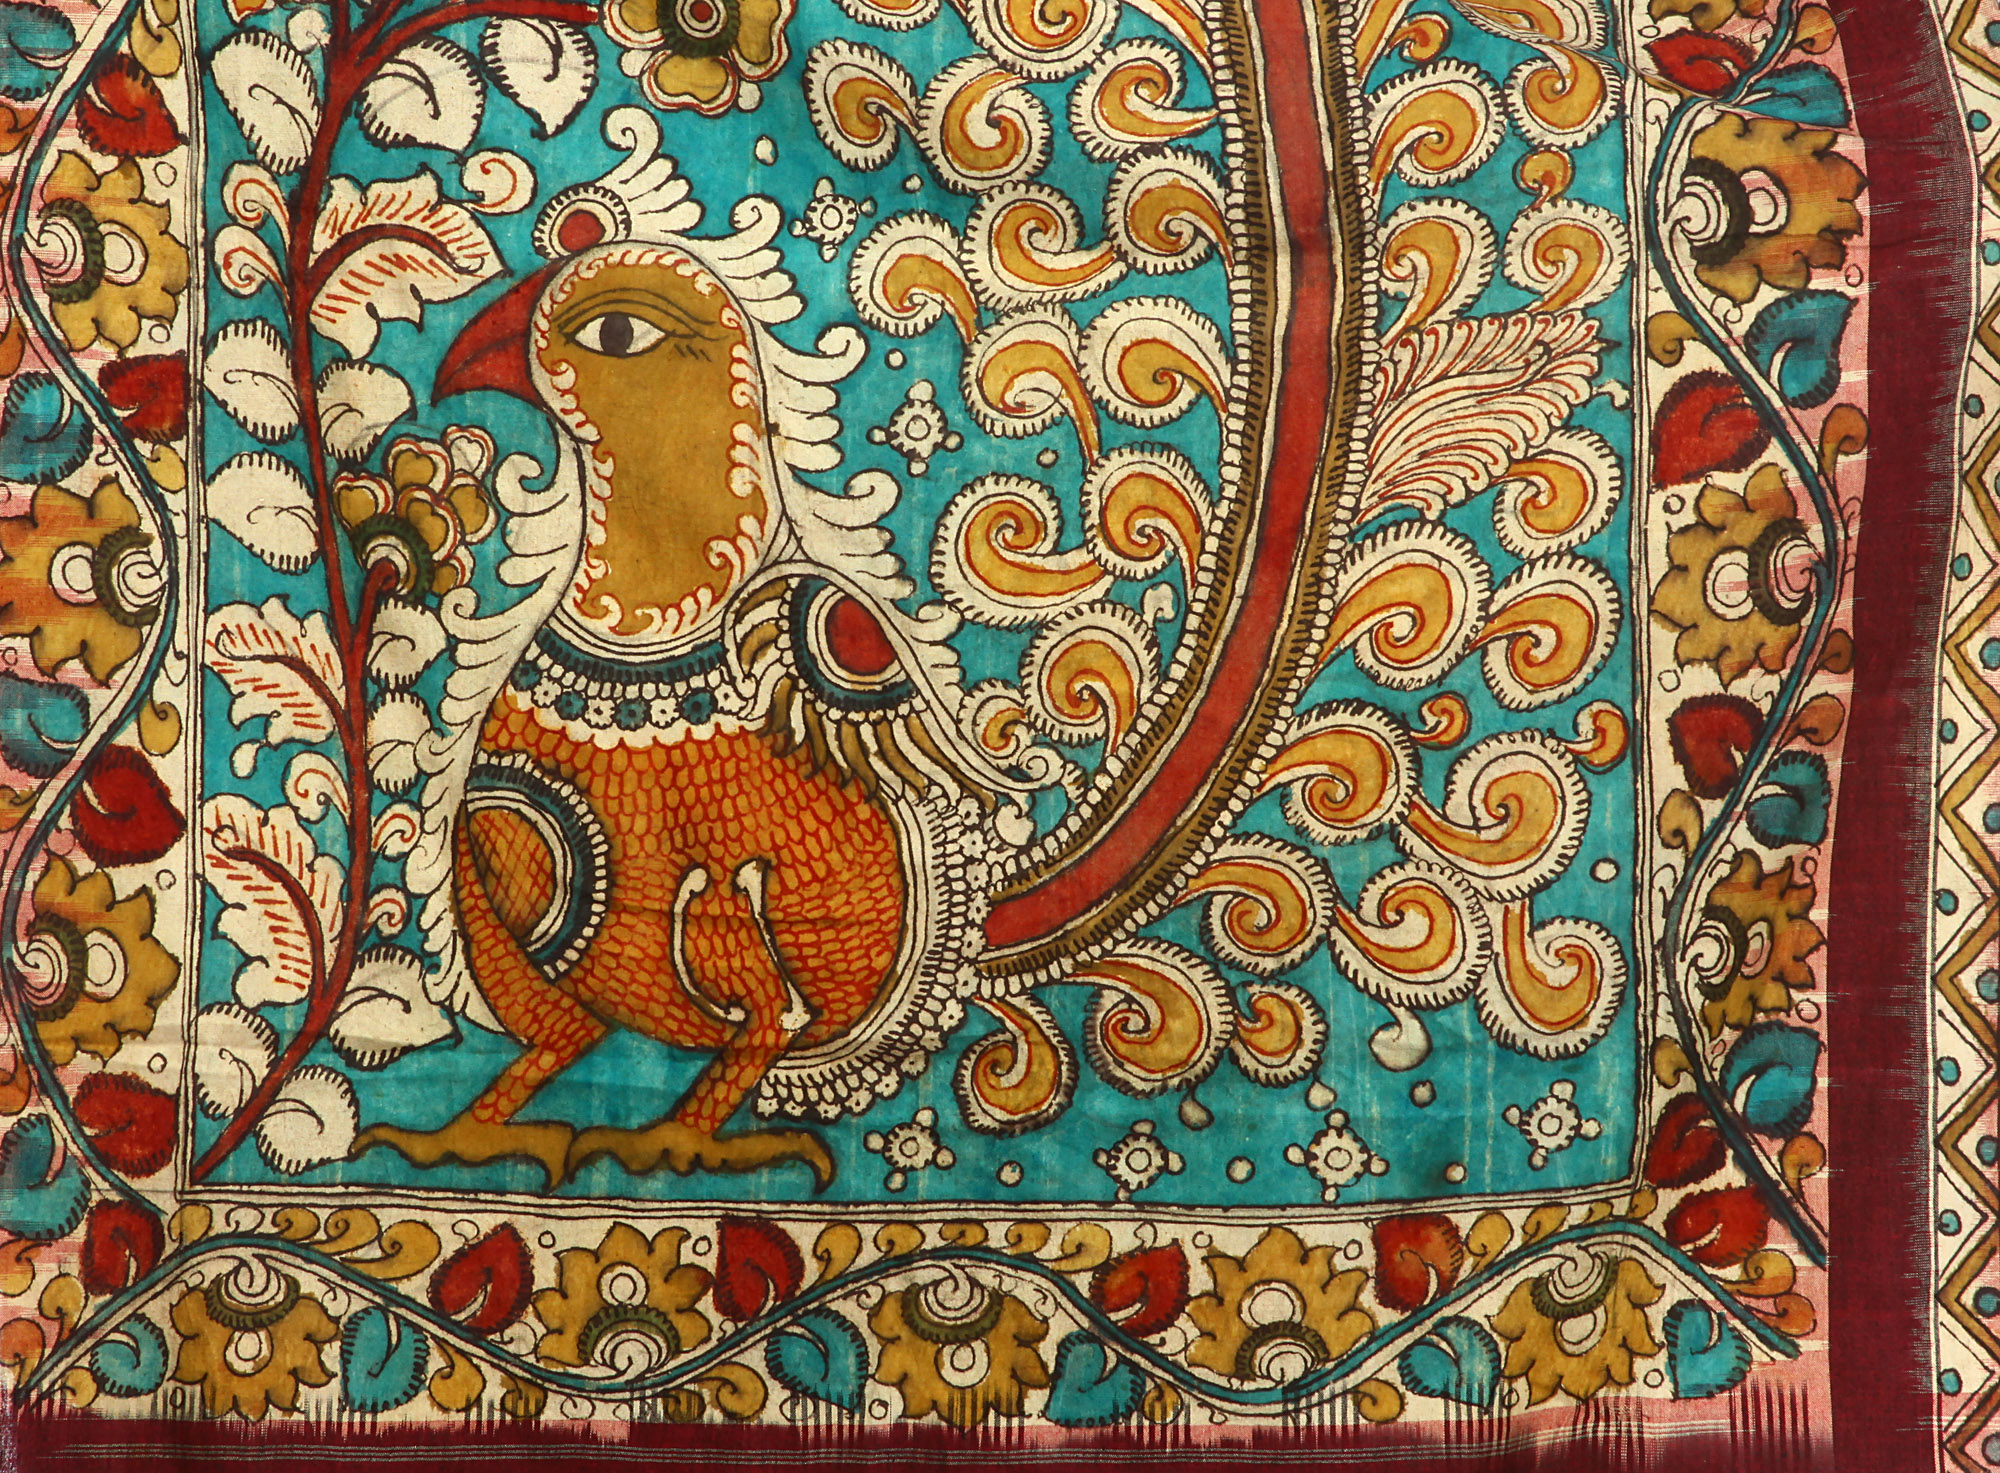 Kalamkari Hand-Painted Shawl with Stylized Peacock | Exotic India Art